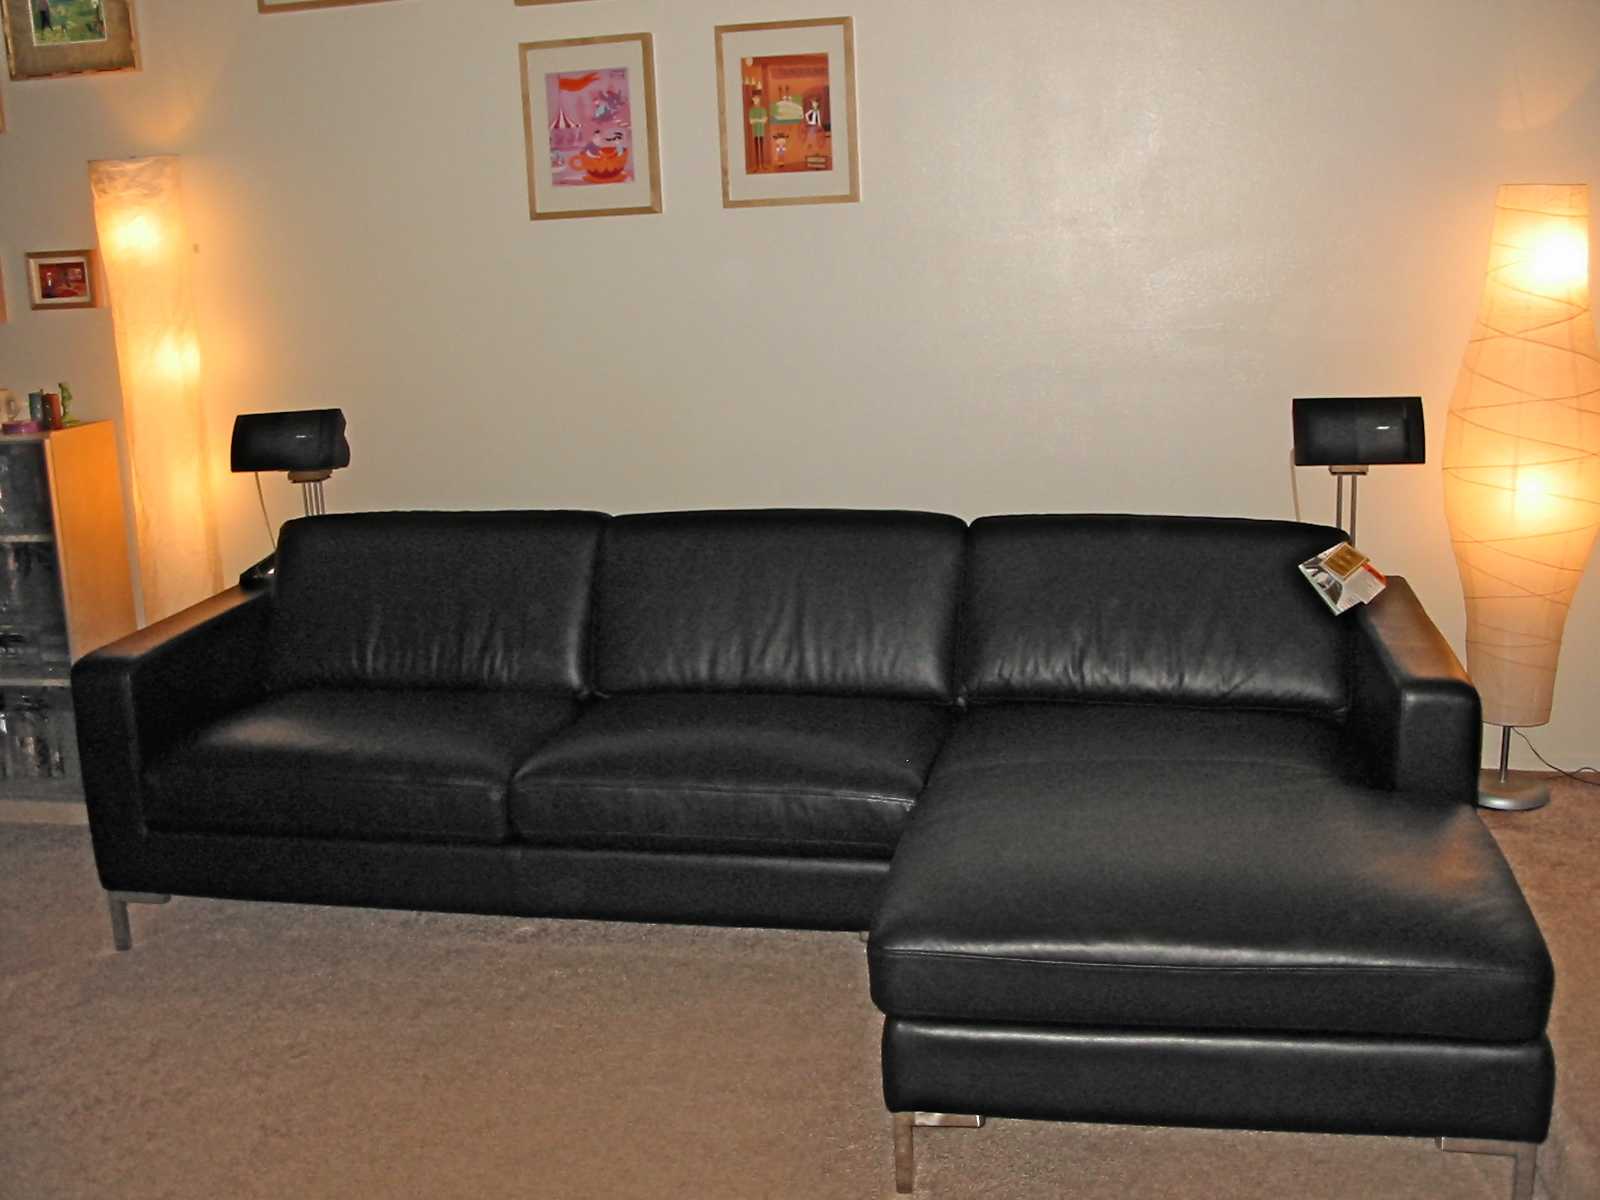 Красотка Стейси и кожаный черный диван 